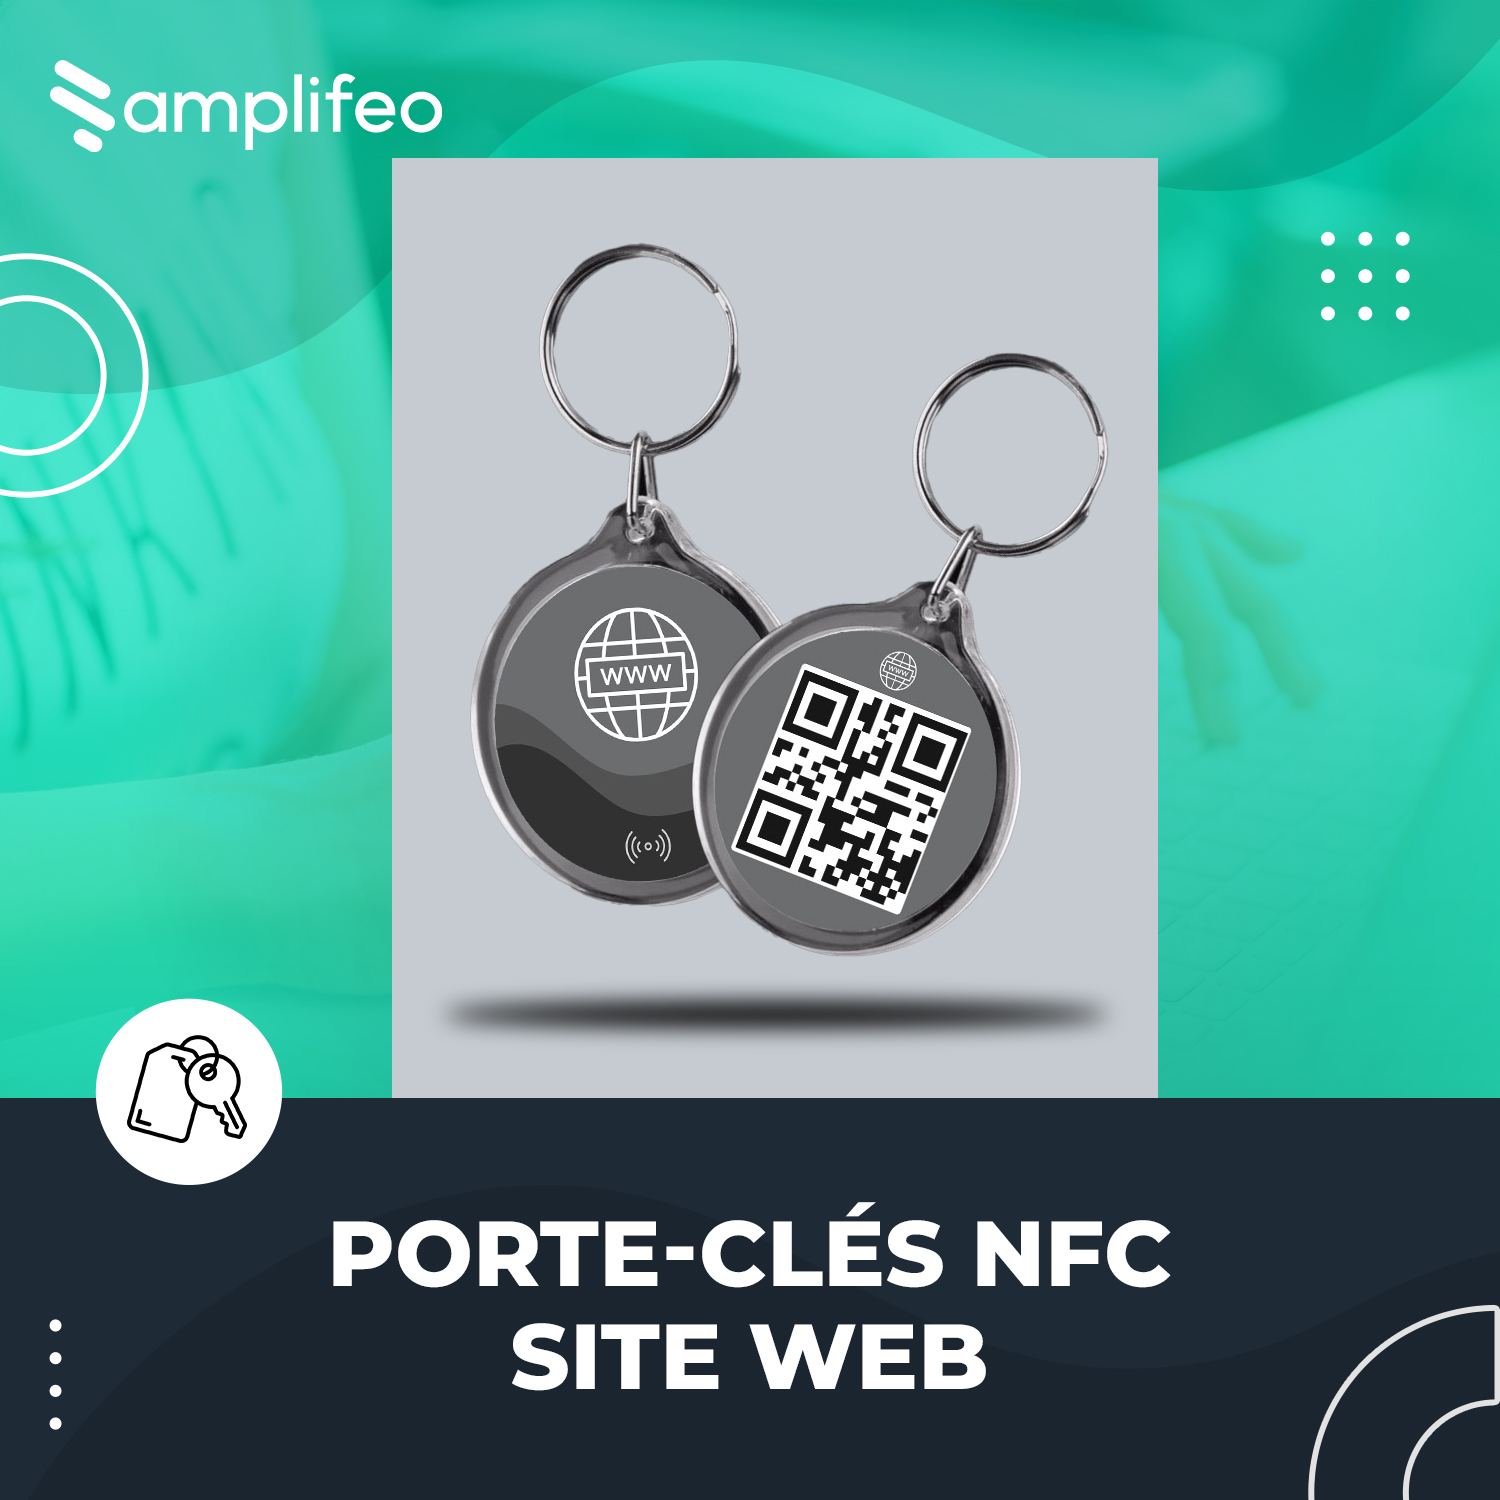 Porte-clés NFC Site Web